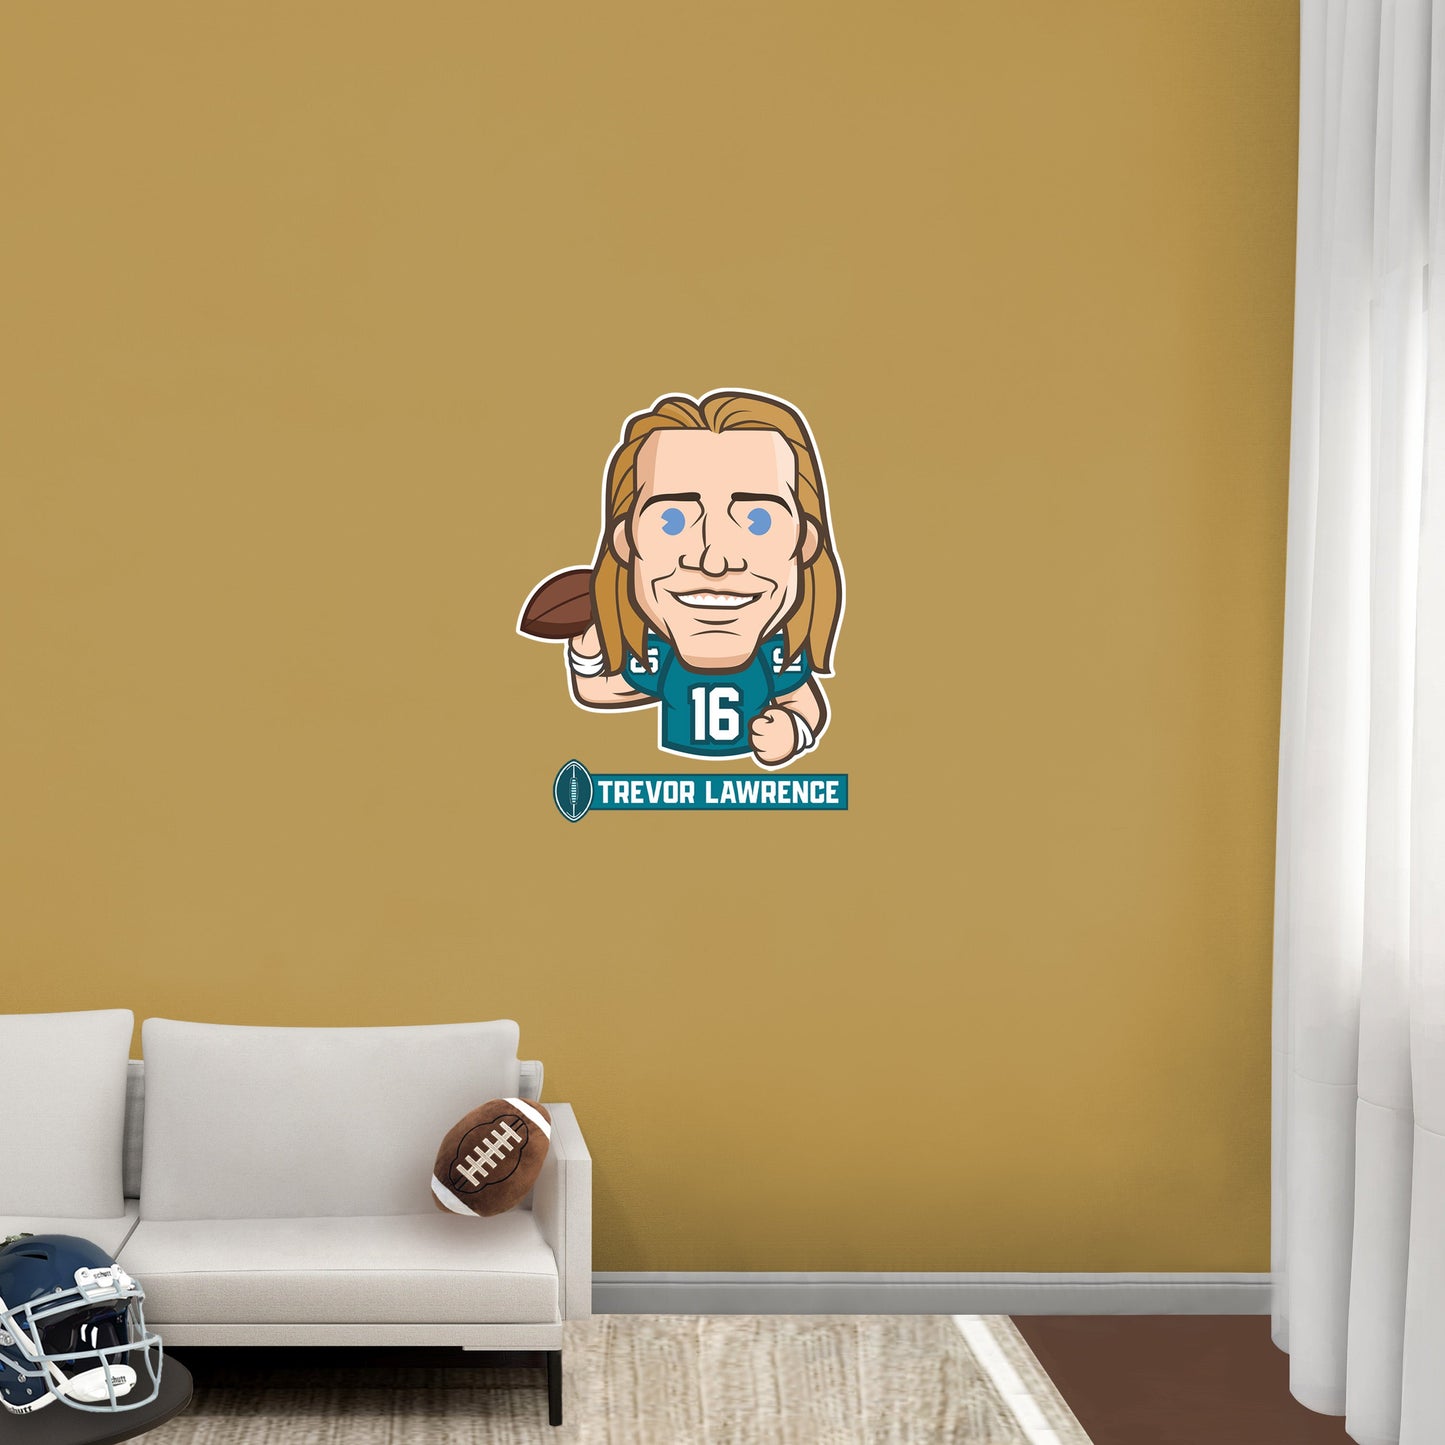 Jacksonville Jaguars: Trevor Lawrence Emoji - Officially Licensed NFLPA Removable Adhesive Decal